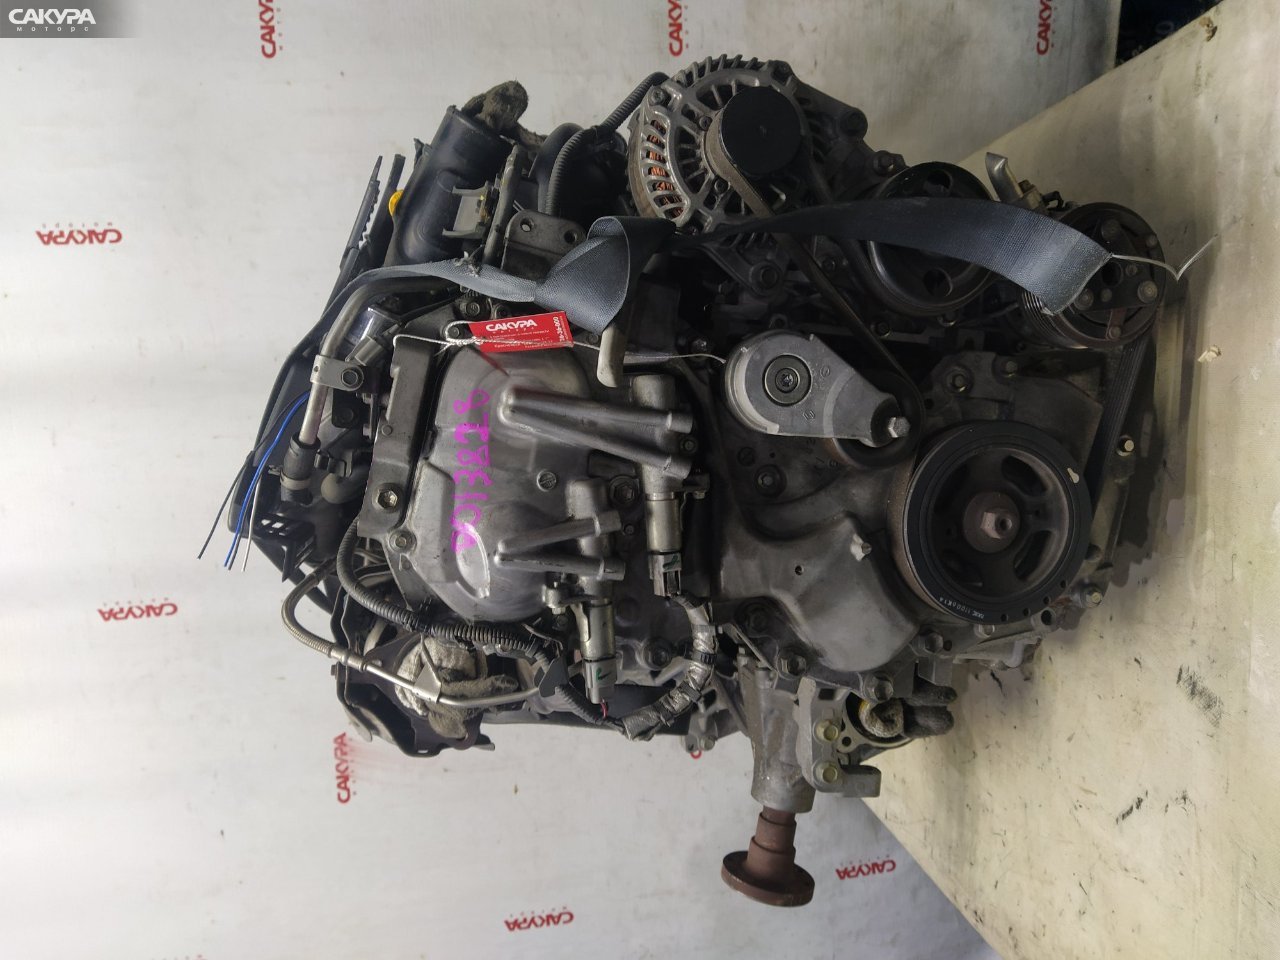 Двигатель Nissan Juke NF15 MR16DDT: купить в Сакура Красноярск.